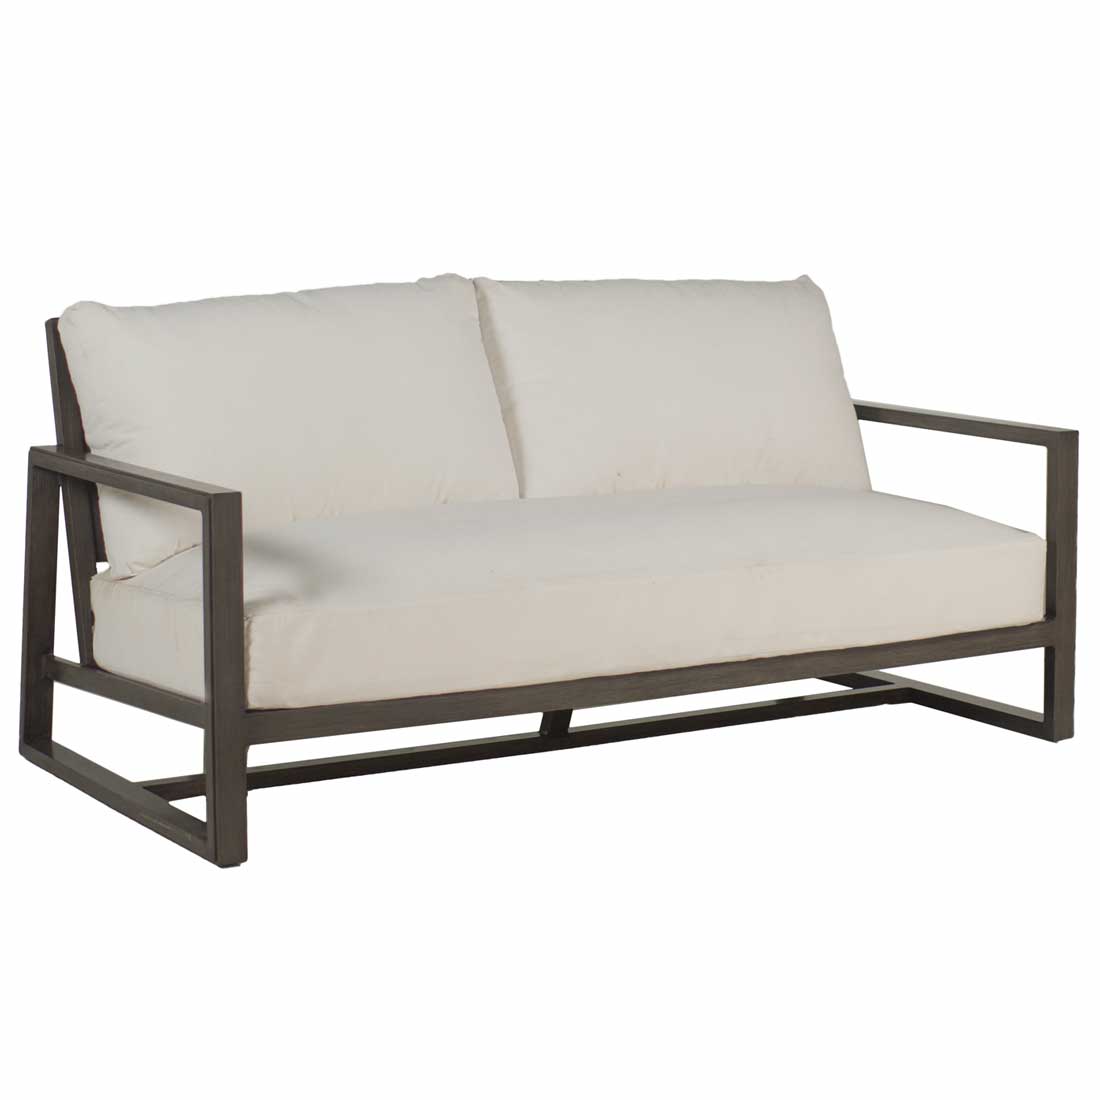 Summer Classics Avondale Aluminum Loveseat Furniture summer-classics-340431+C598H3884W3884